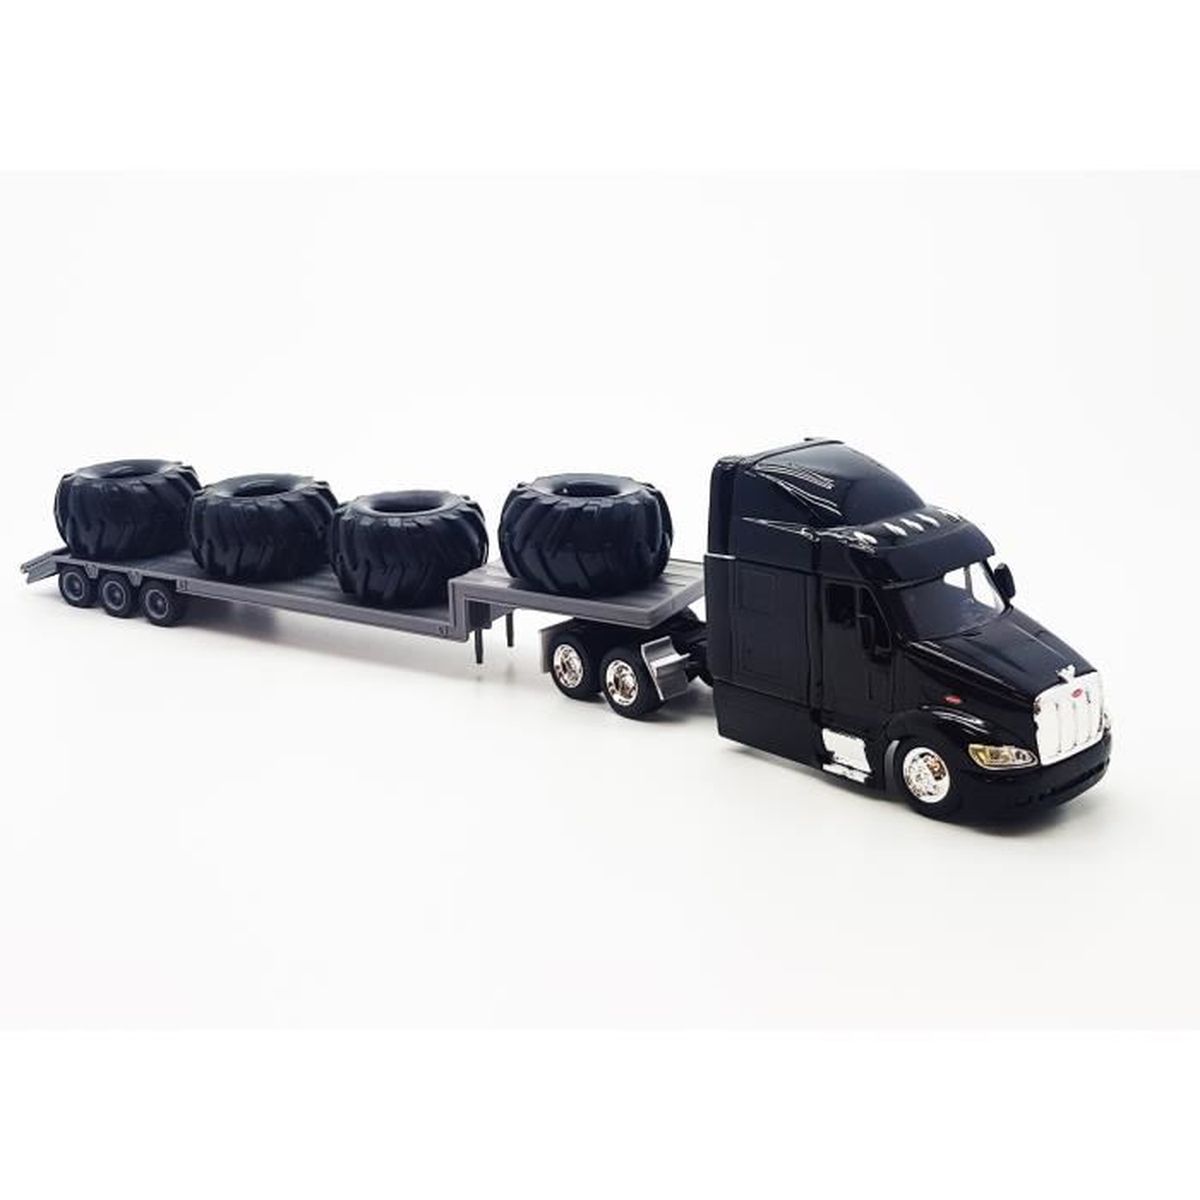 Toyland® Camion Jouet 28cm et remorque - Modèles de Jouets et véhicules -  Modèles Assortis (Camion de conteneur)